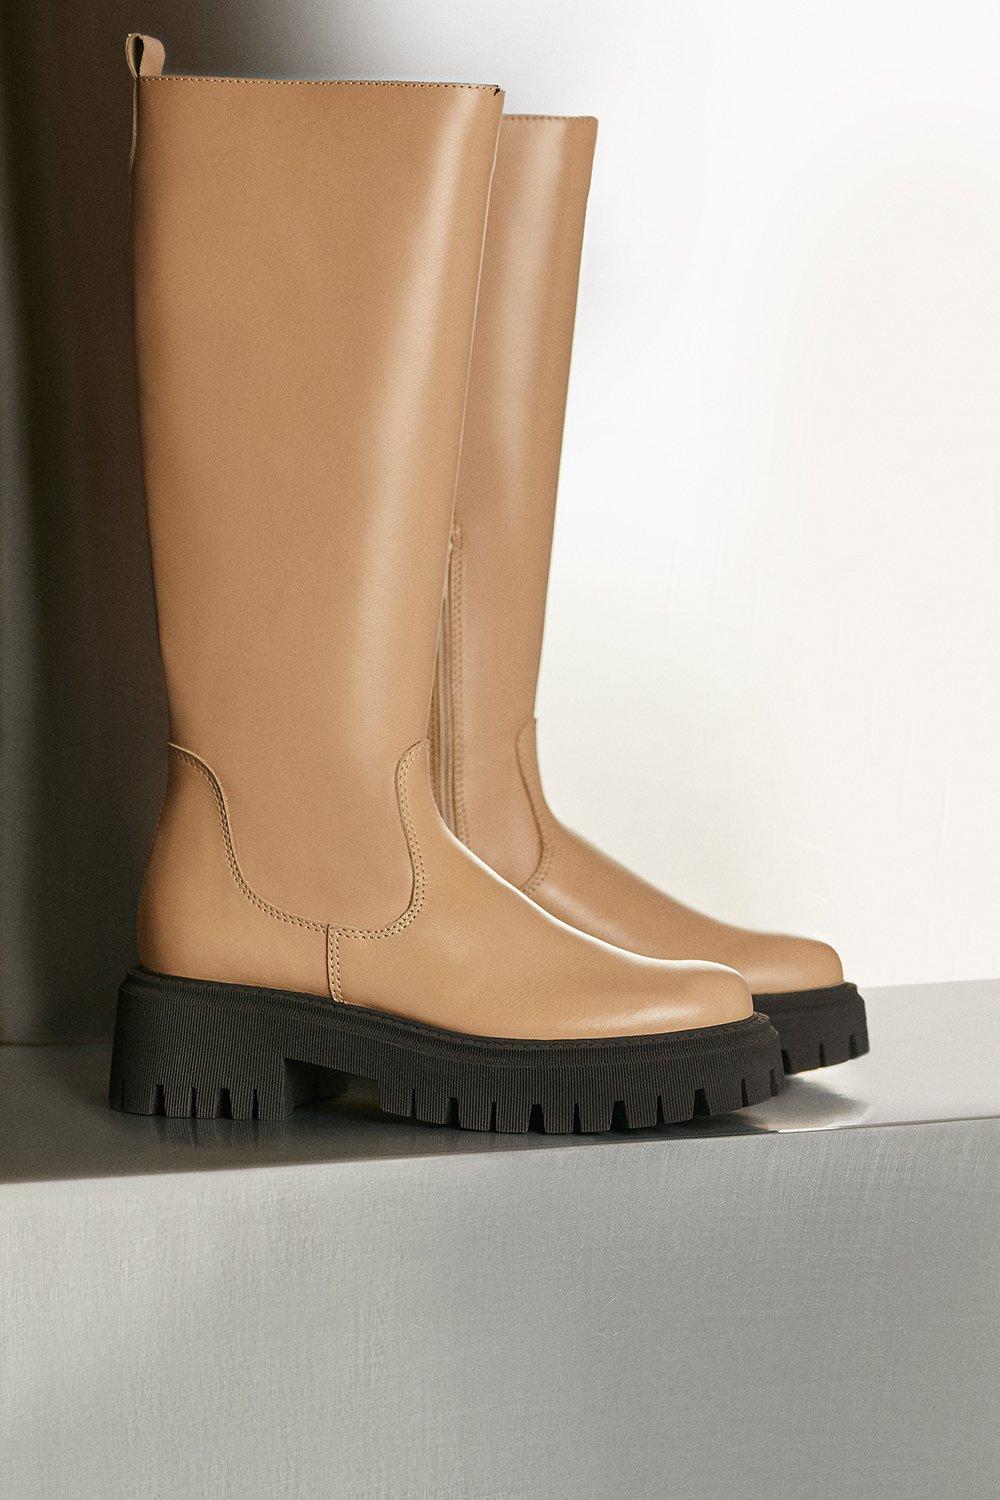 Karen Millen Knee High Leather Flat Boot